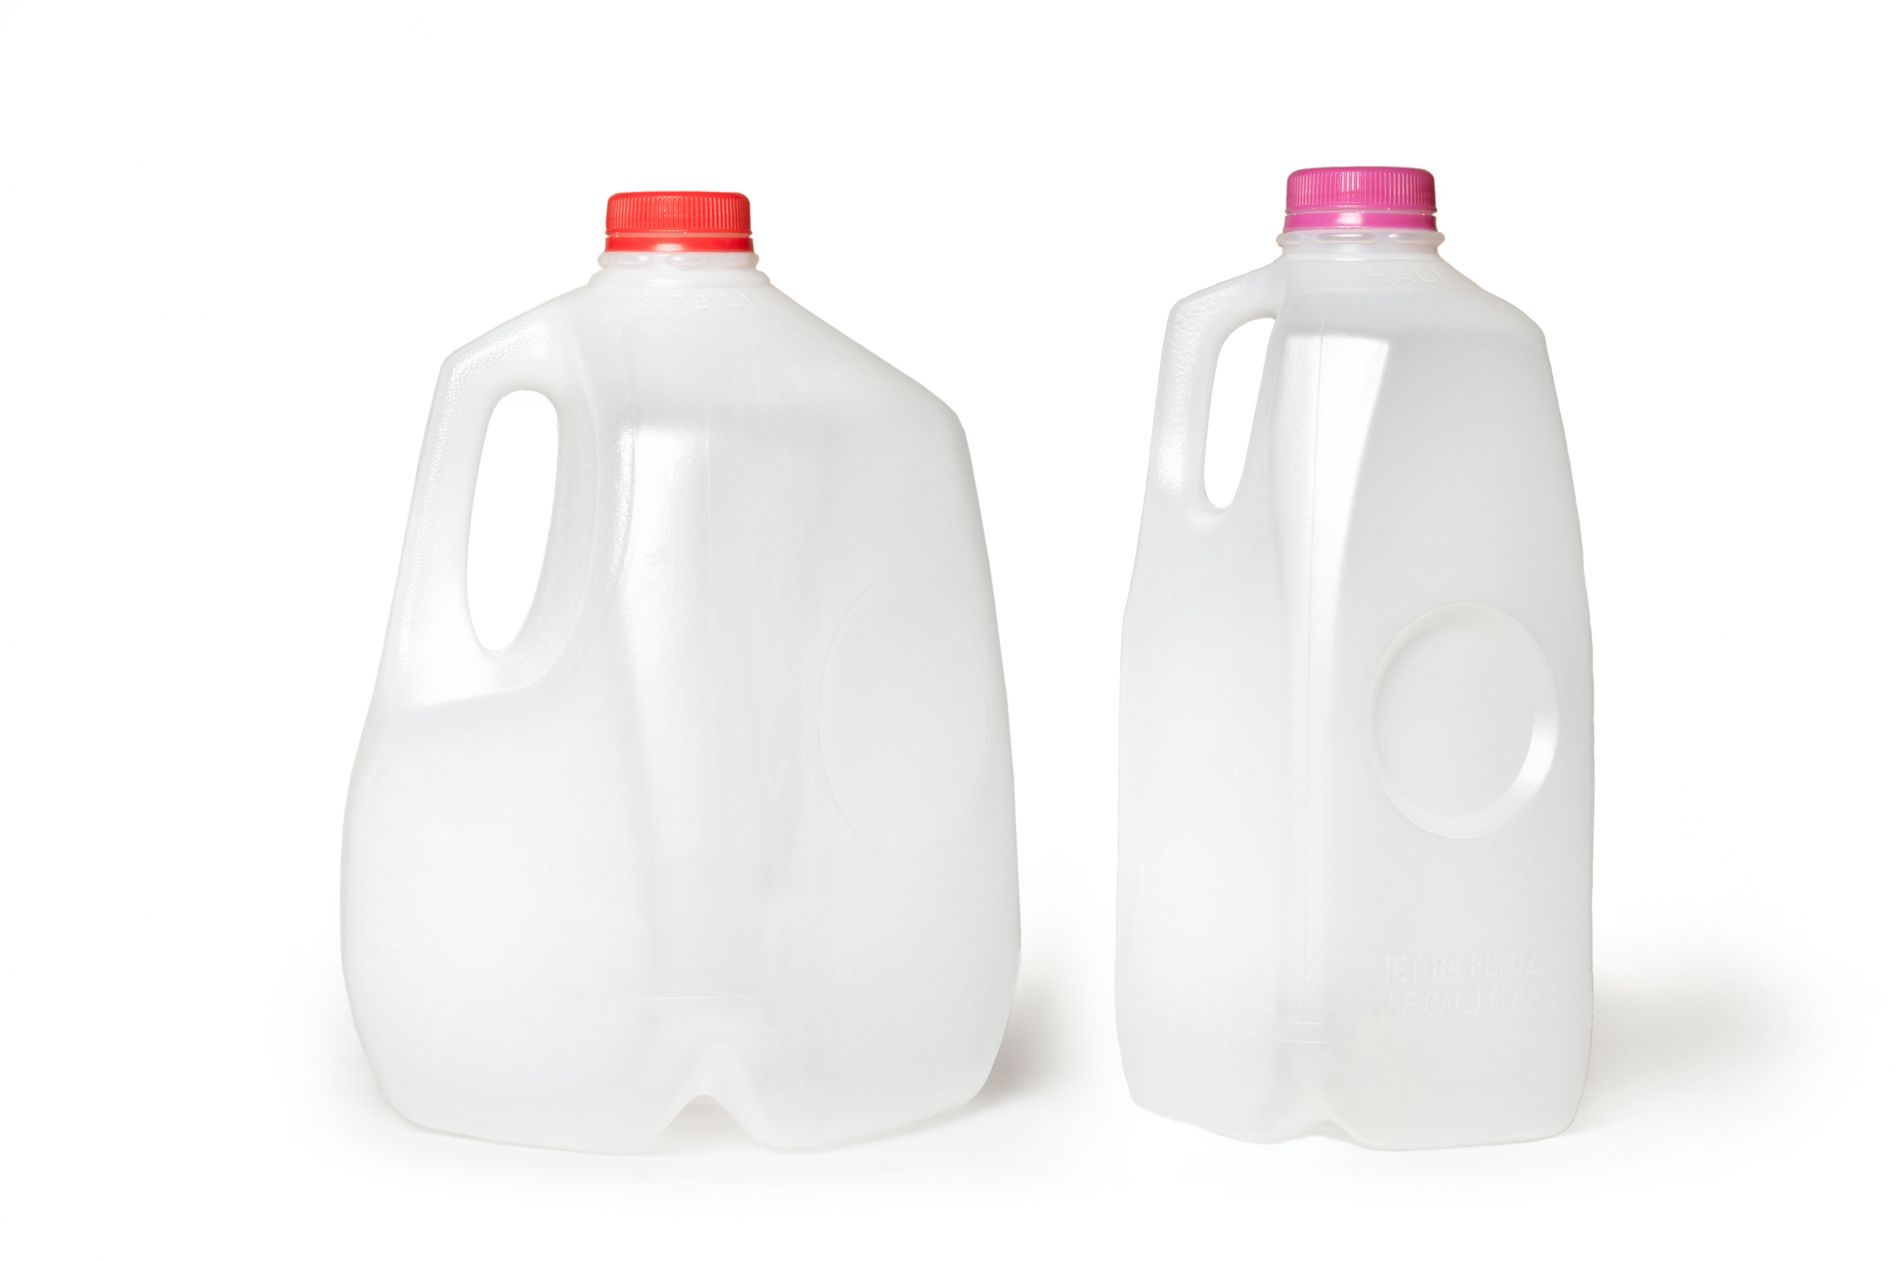 Milk jugs.